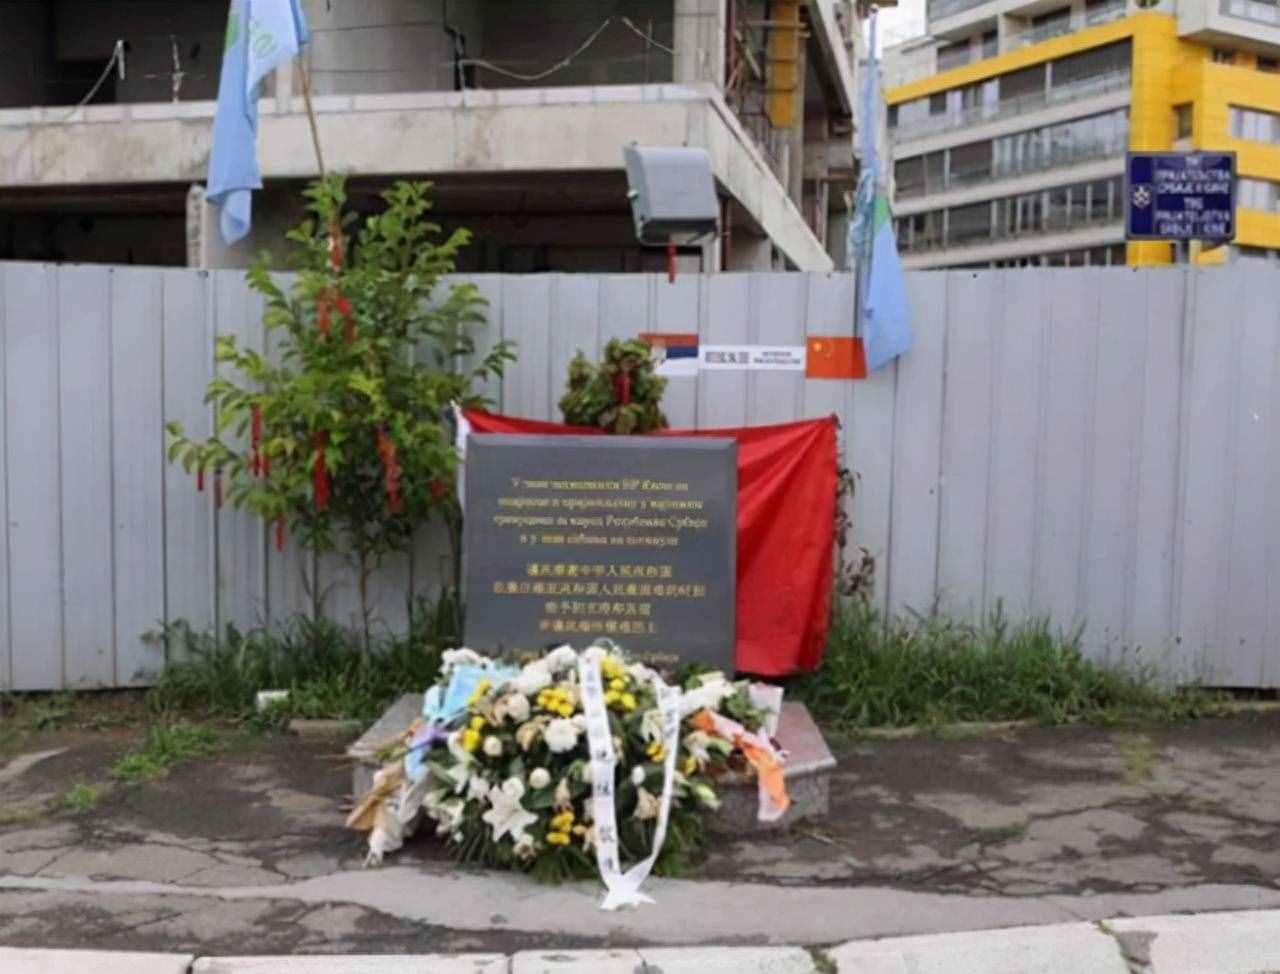 1999年轰炸我国南斯拉夫大使馆，3名记者遇难，其家属是何反应？